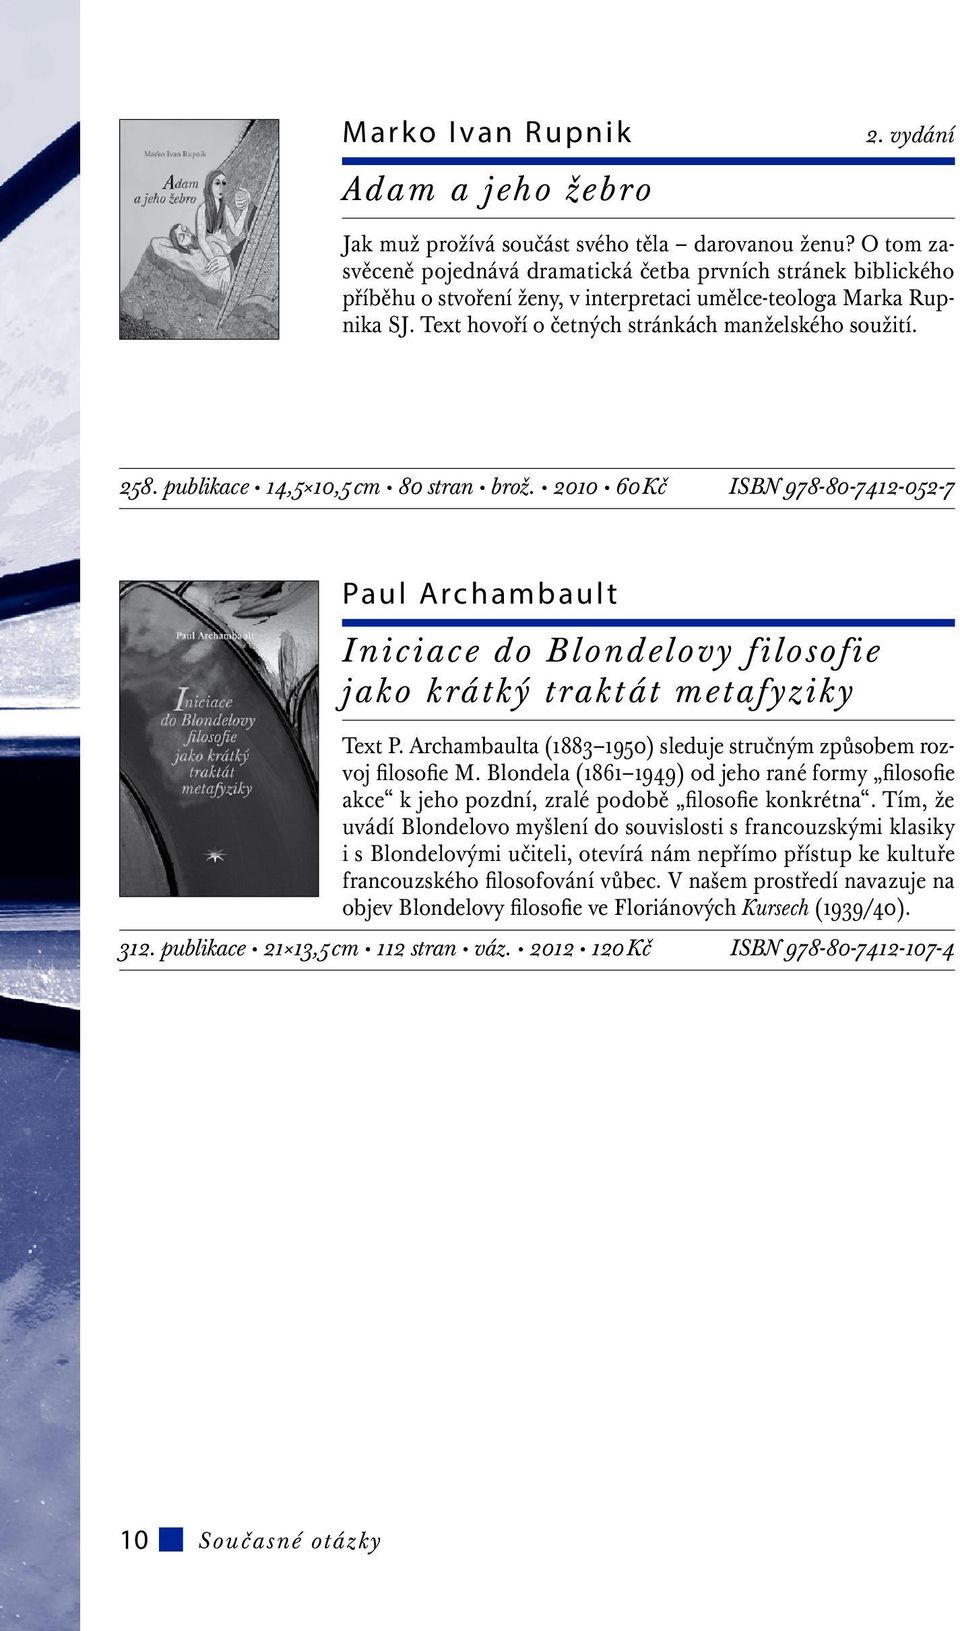 publikace 14,5 10,5 cm 80 stran brož. 2010 60 Kč ISBN 978-80-7412-052-7 Paul Archambault Iniciace do Blondelovy filosofie jako krátký traktát metafyziky Text P.